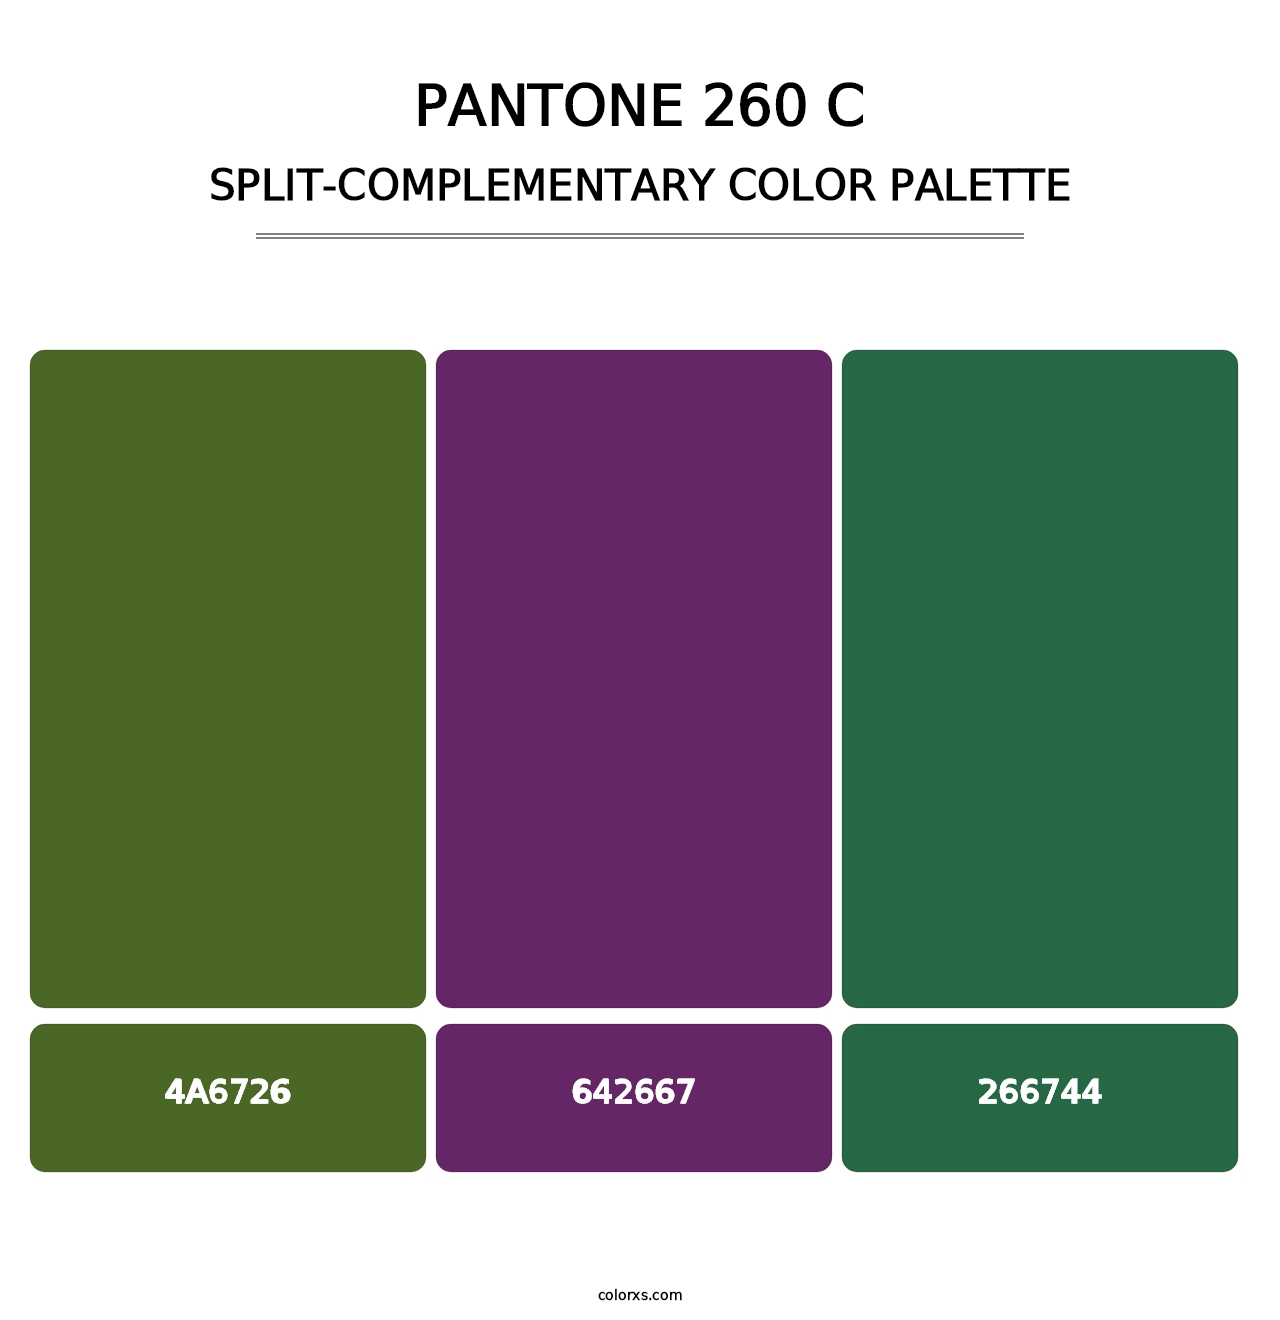 PANTONE 260 C - Split-Complementary Color Palette